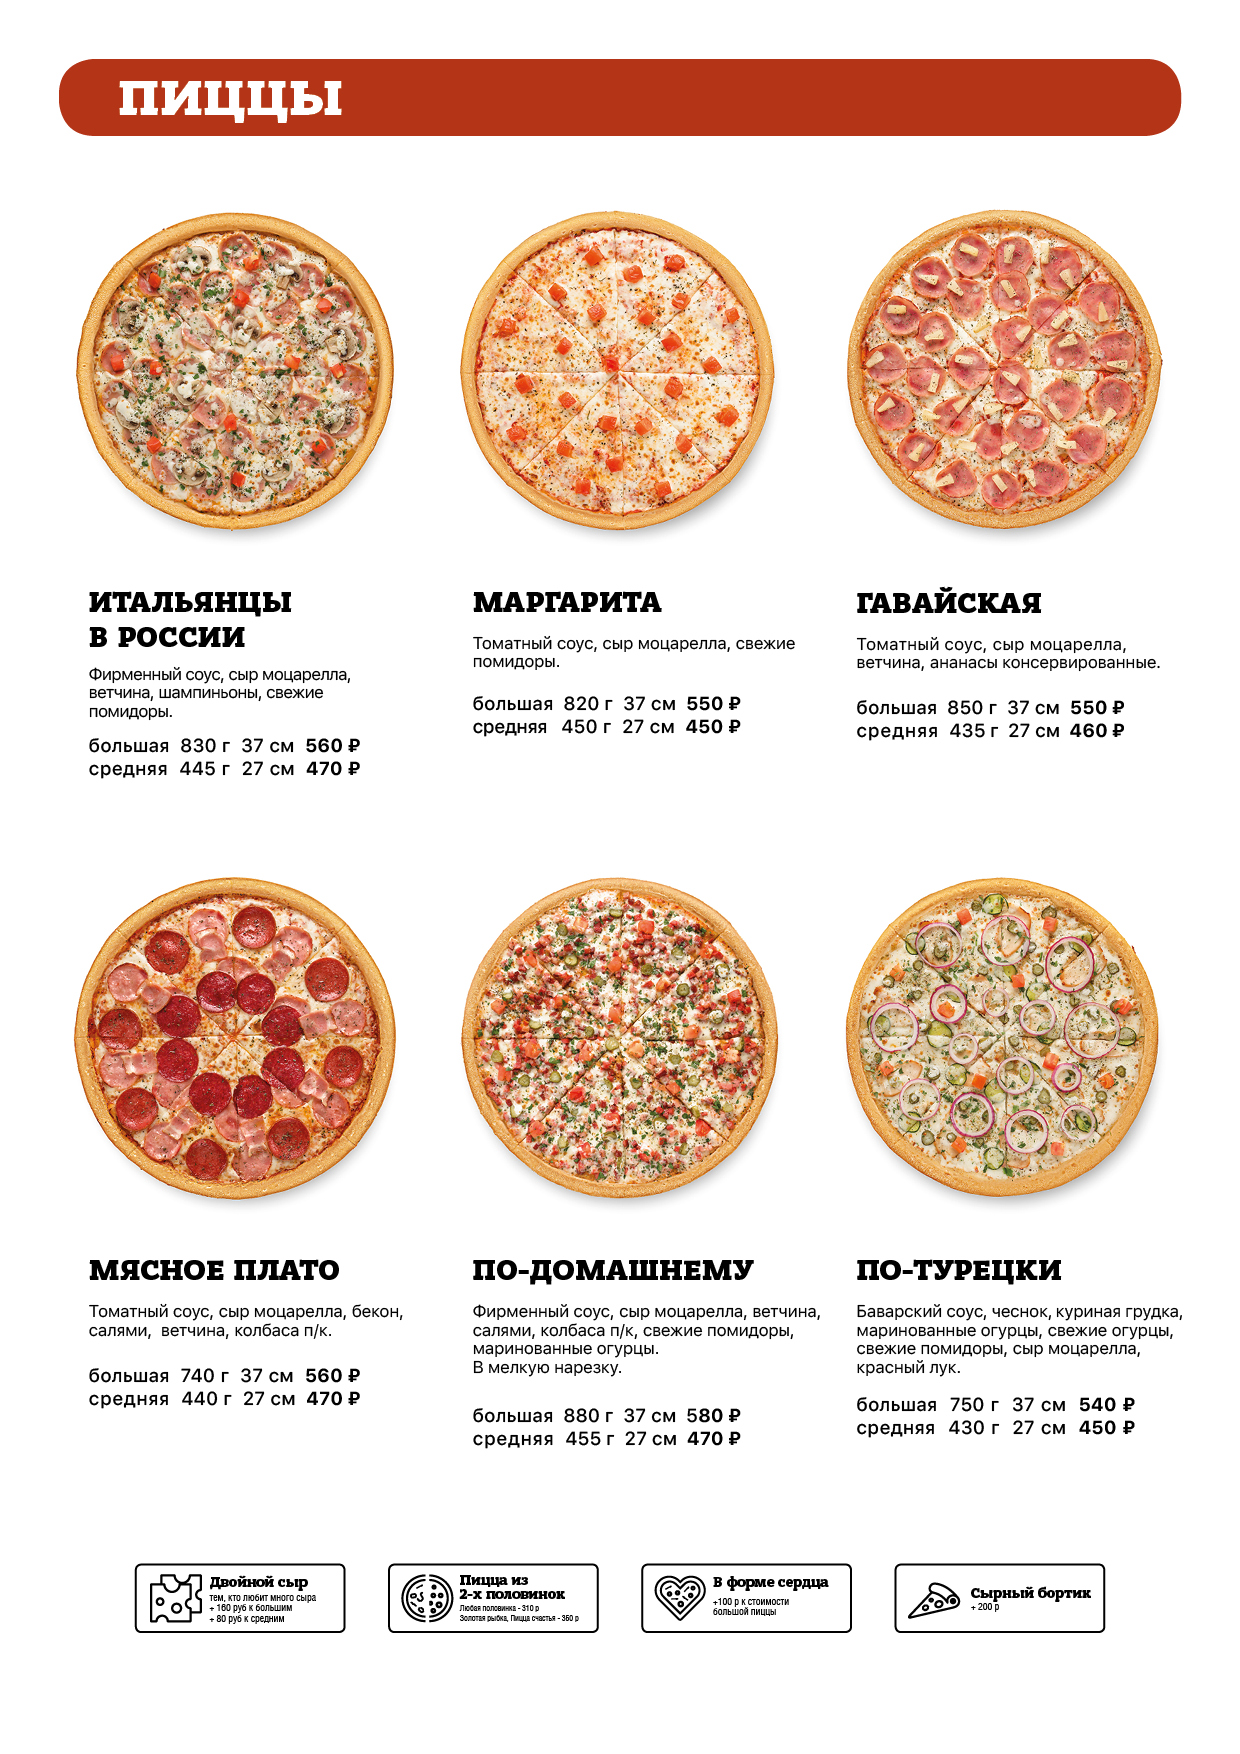 сколько калорий в одном куске пиццы гавайская фото 33